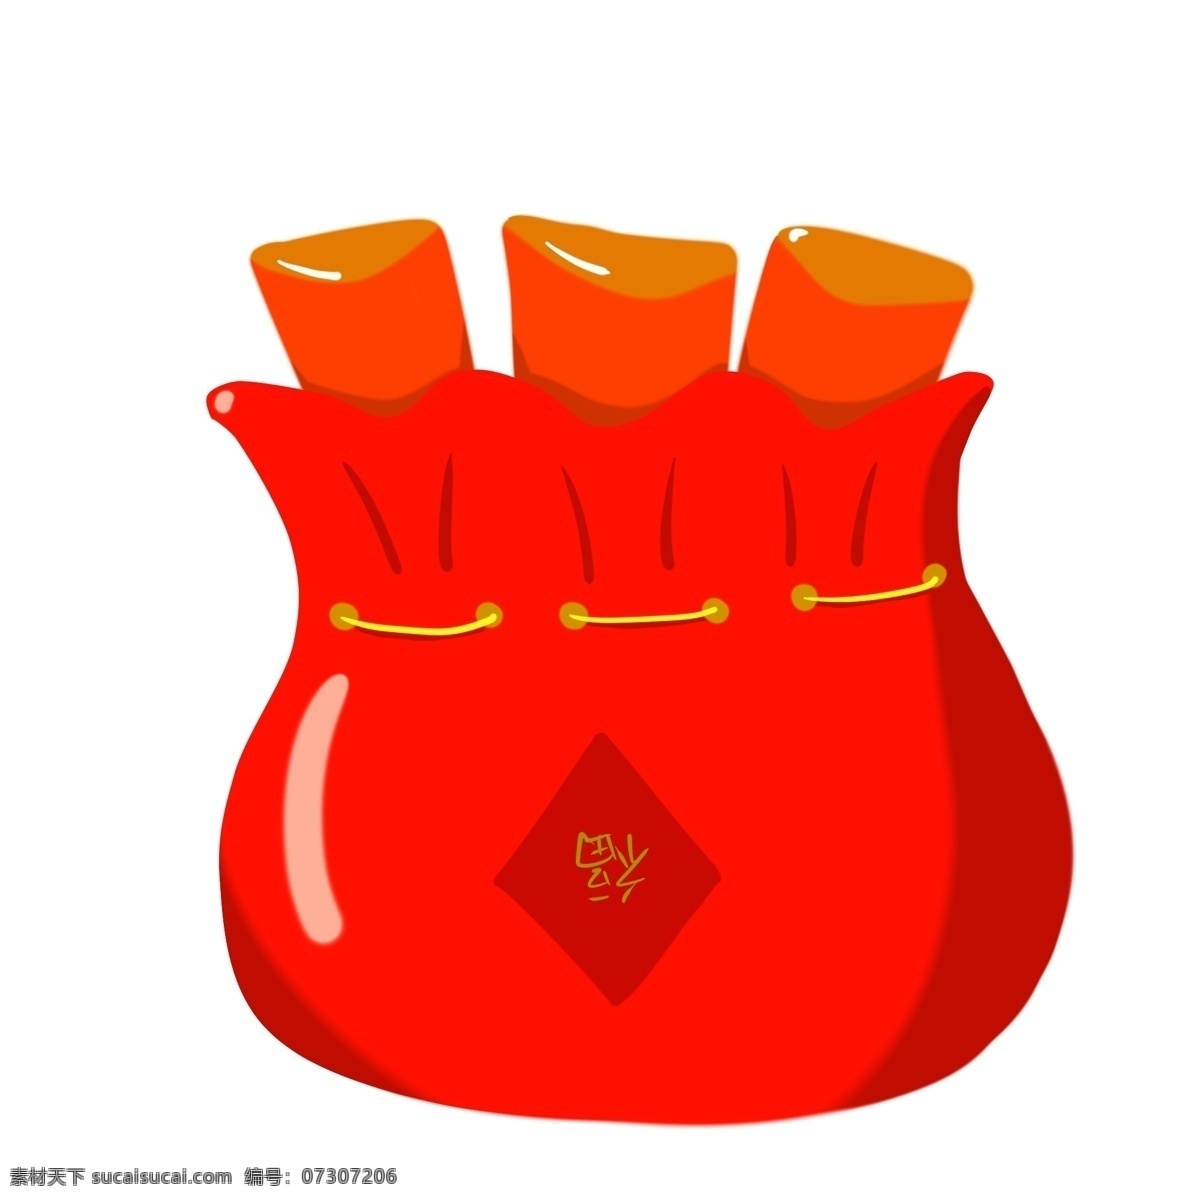 红包 习俗 礼节 发财 礼物 传统 压岁钱 喜庆 中国红 红色 金色 祝福 中国传统节日 中国传统习俗 寓意 中国风 传统习俗